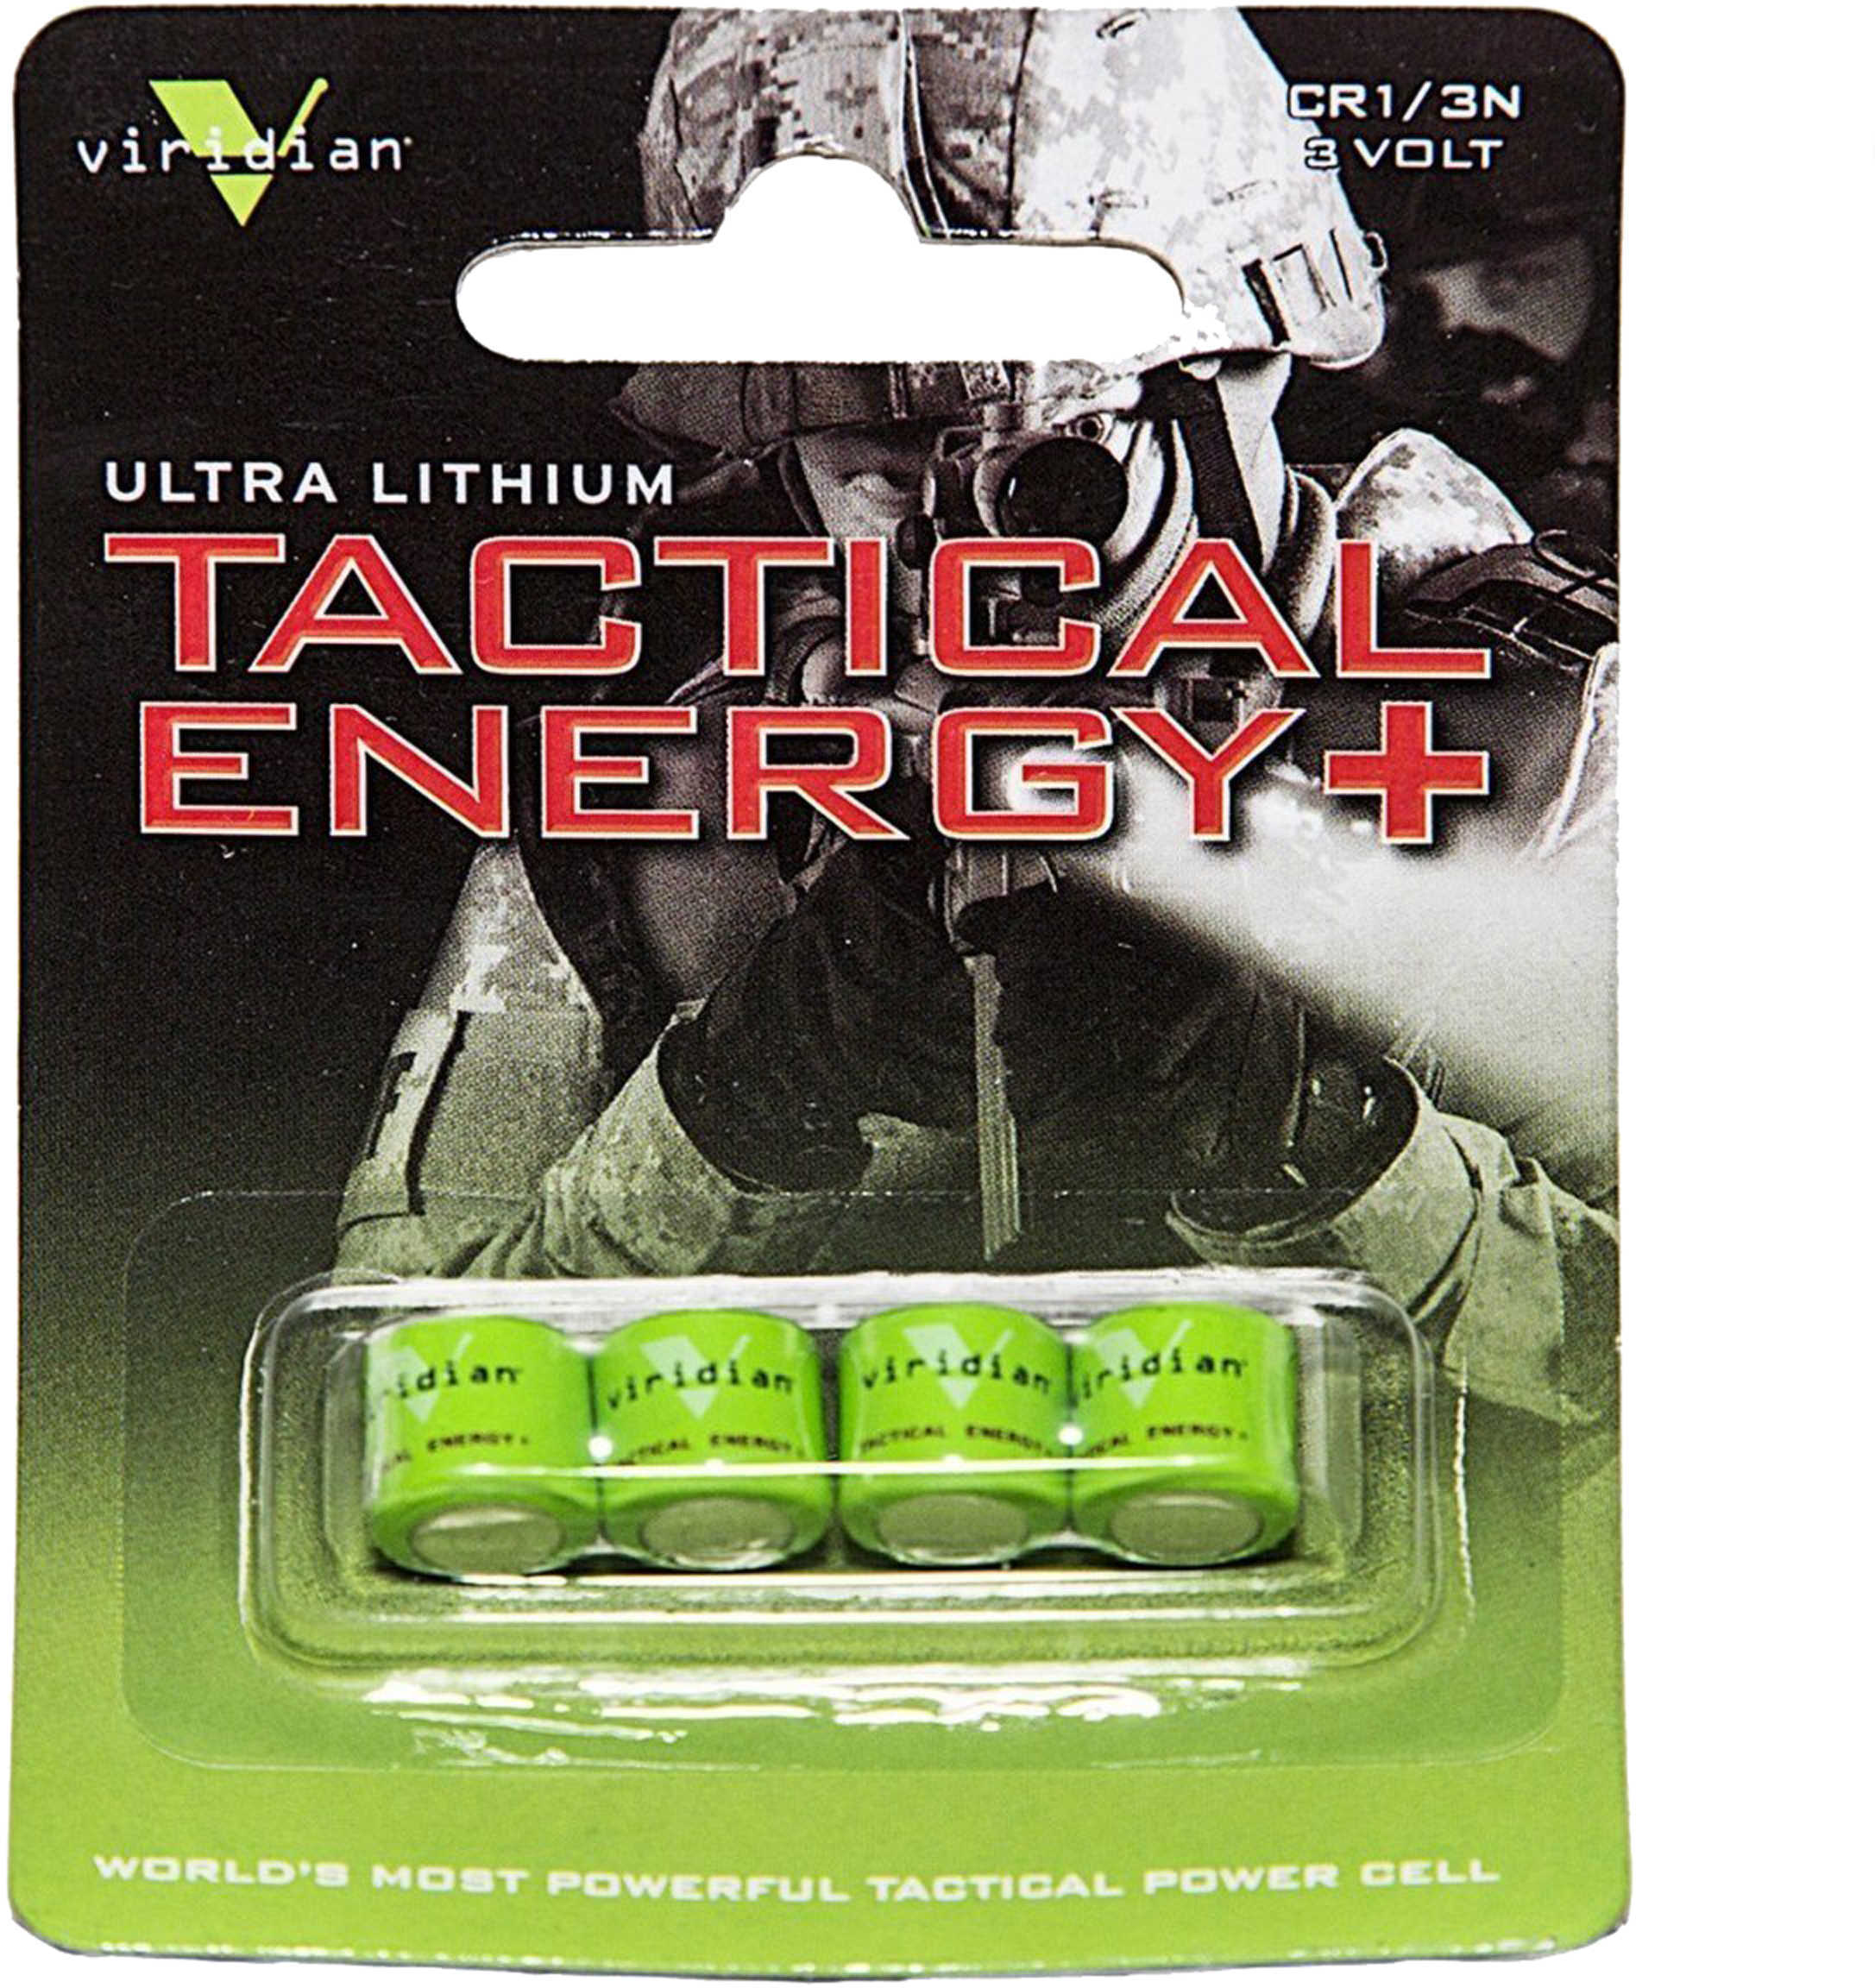 Viridian Weapon Technologies 1/3N Lithium Battery 4 Pack VIR13N4